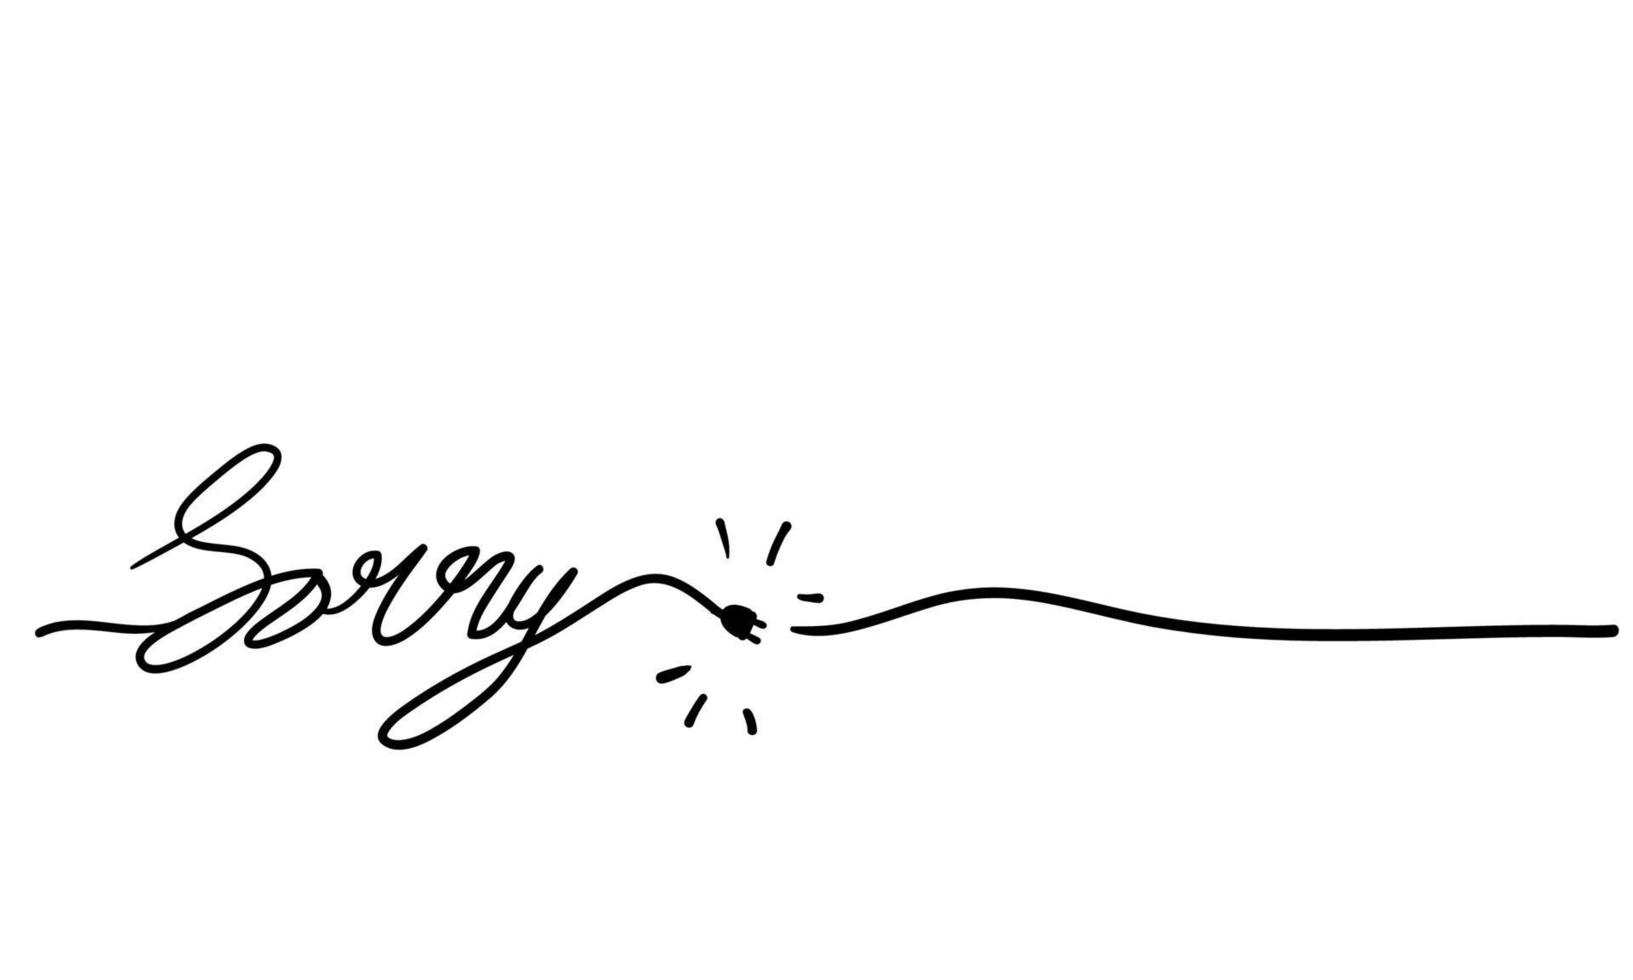 Handbeschriftung Entschuldigung mit durchgehender Linie Doodle handgezeichneter Vektor isolierter Hintergrund